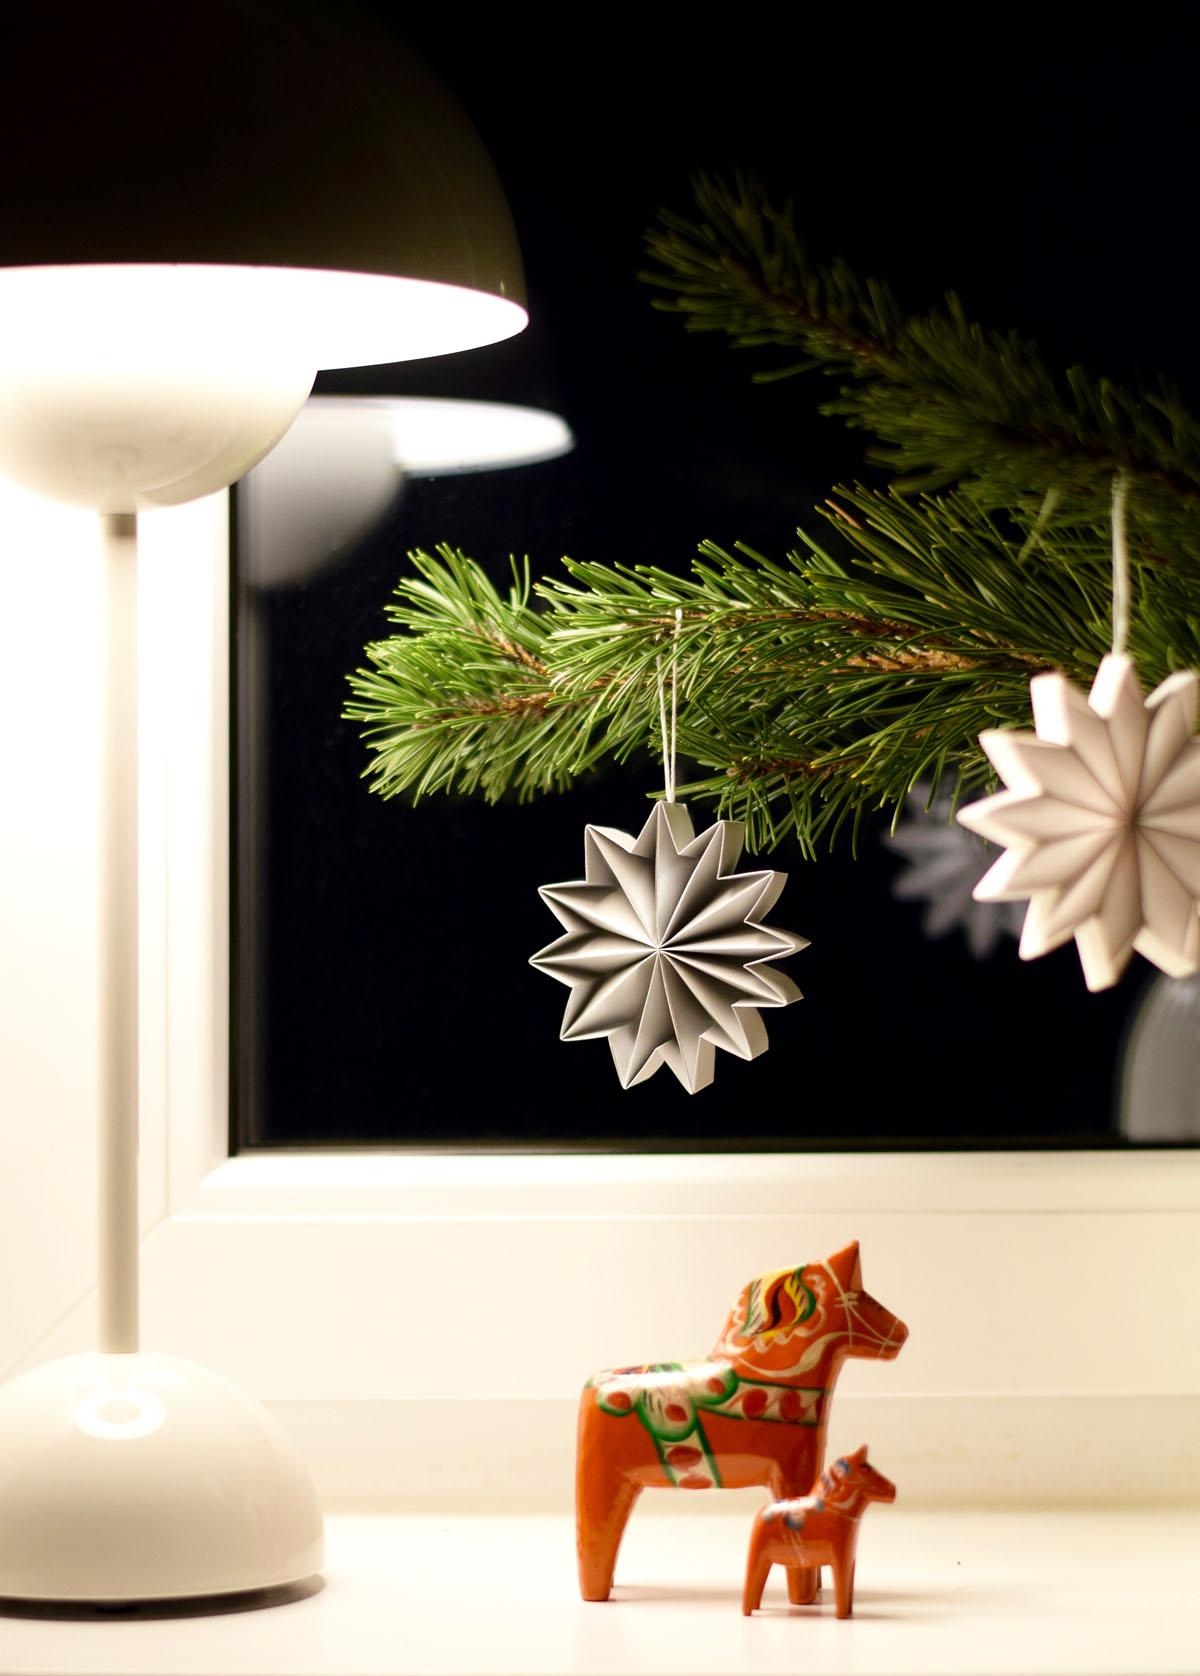 Kunstvolle Papiersterne und vintage Dalapferdchen mit traditioneller Kurbitsmalerei. 
#weihnachtsdeko #sterne  